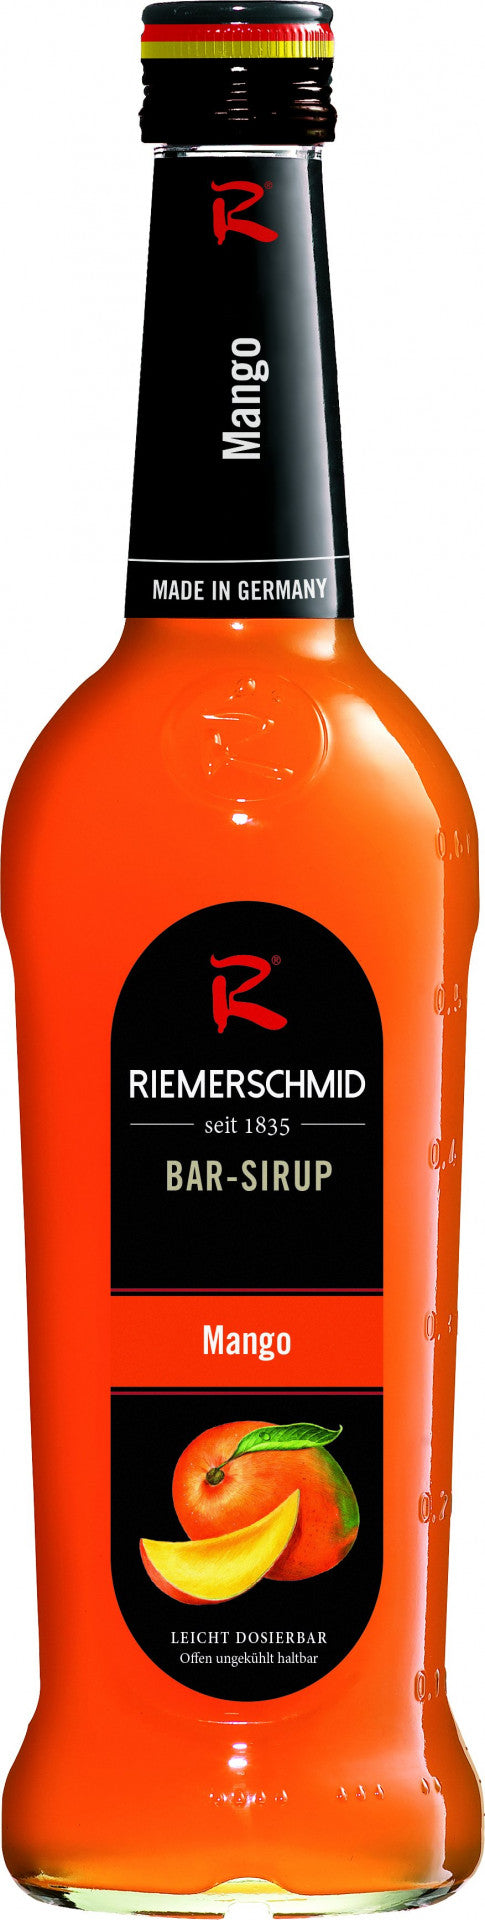 Riemerschmid Bar-Sirup Mango Geschmack 0,7L